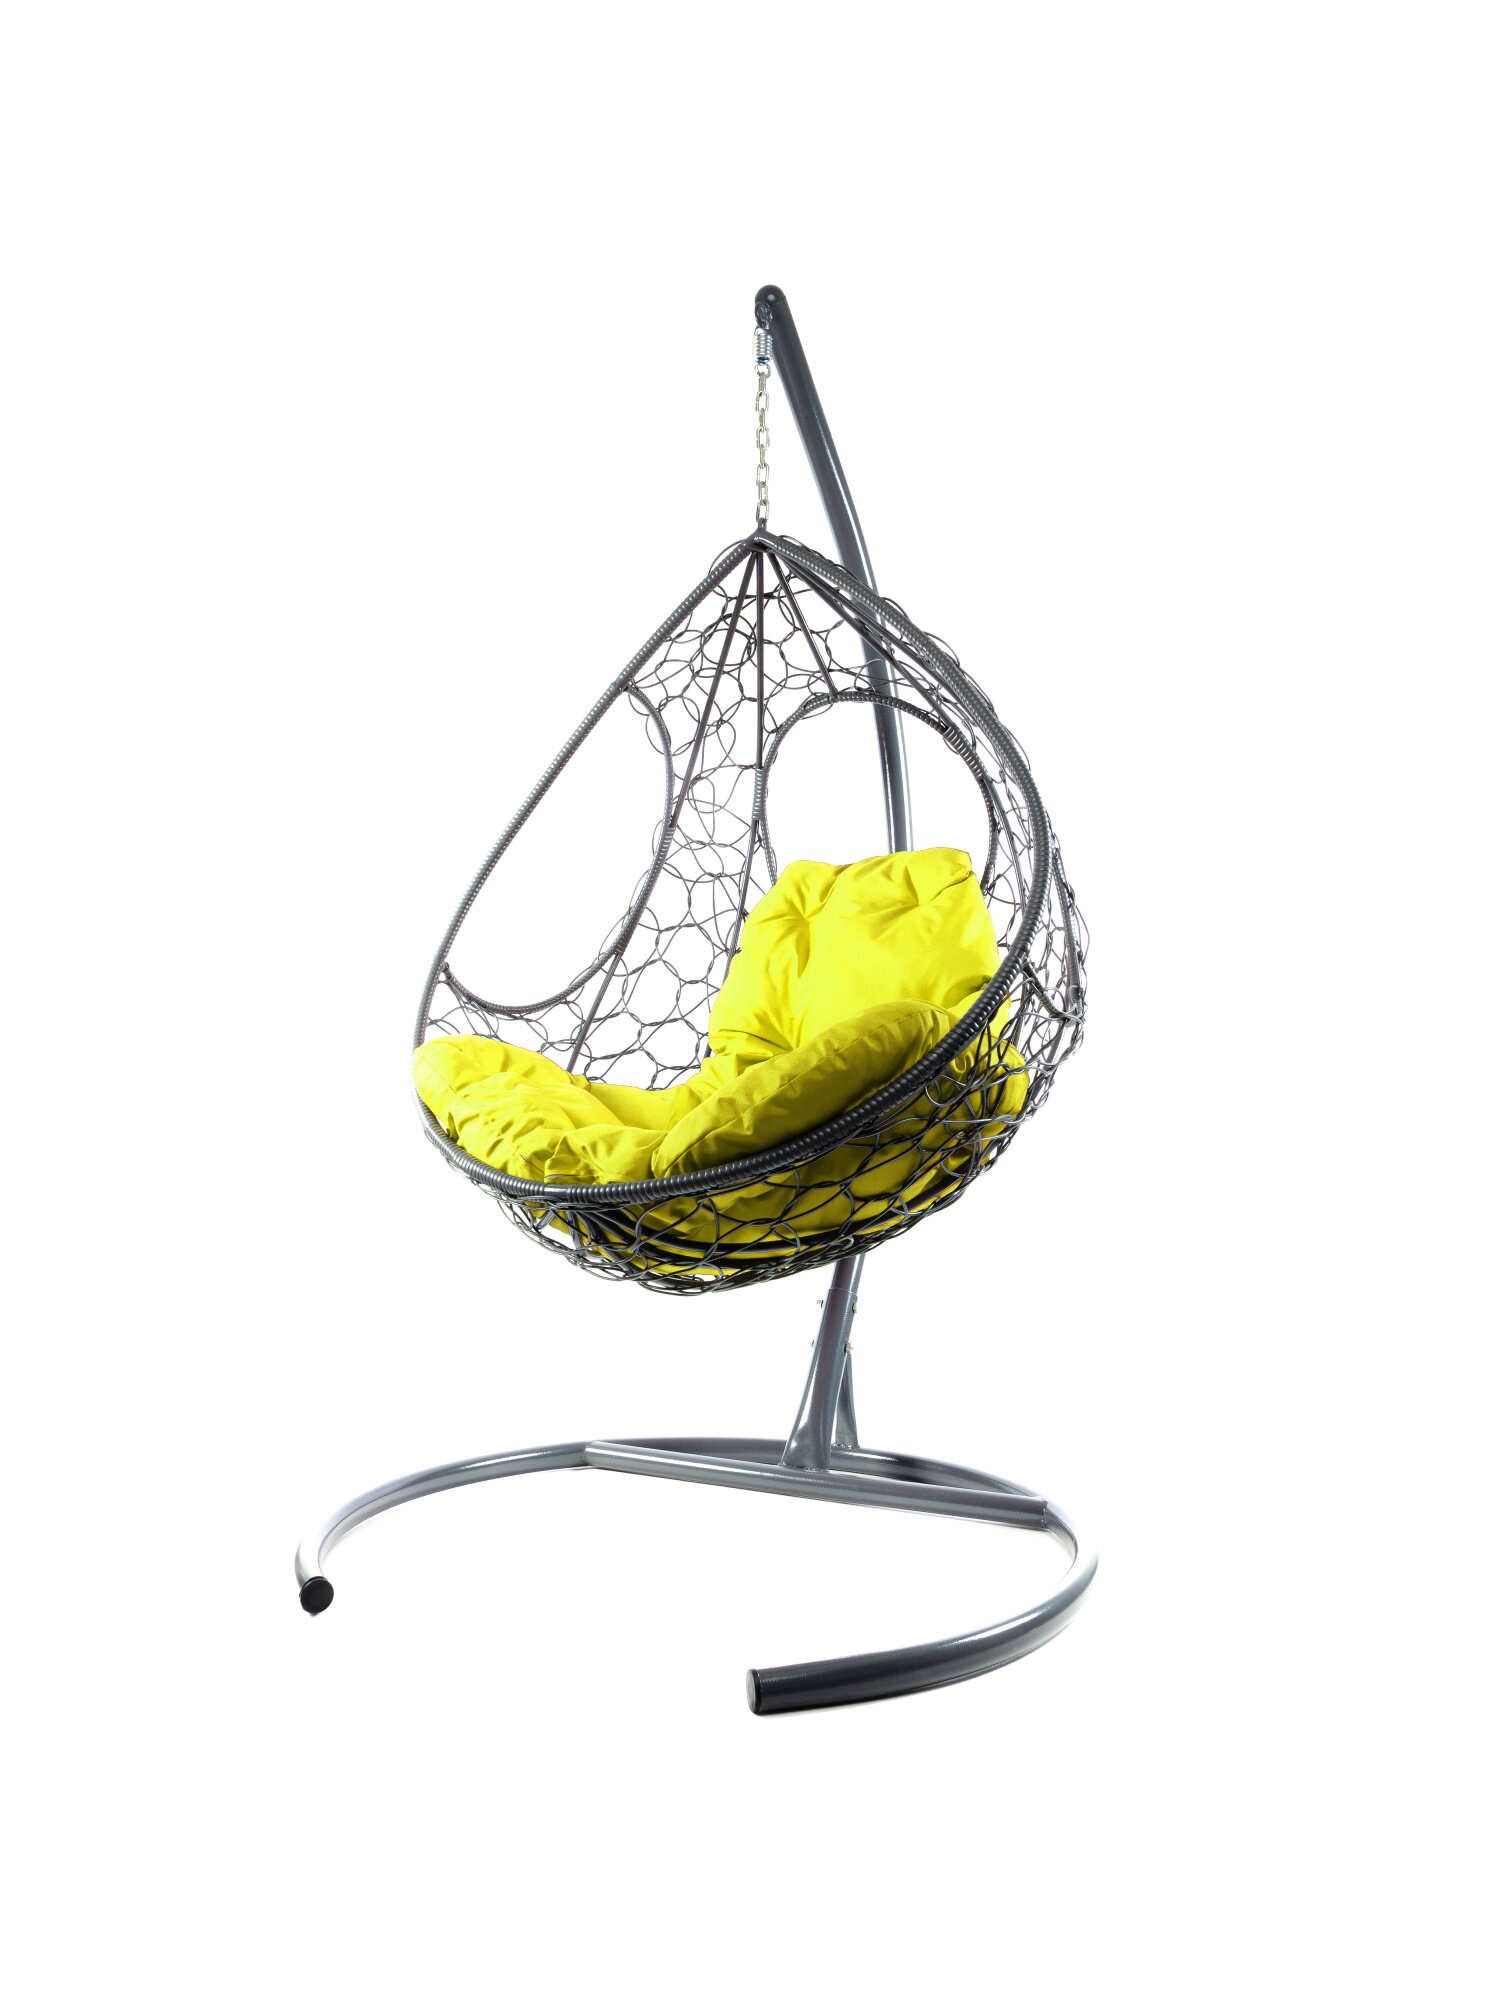 Подвесное кресло M-group долька с ротангом серое жёлтая подушка